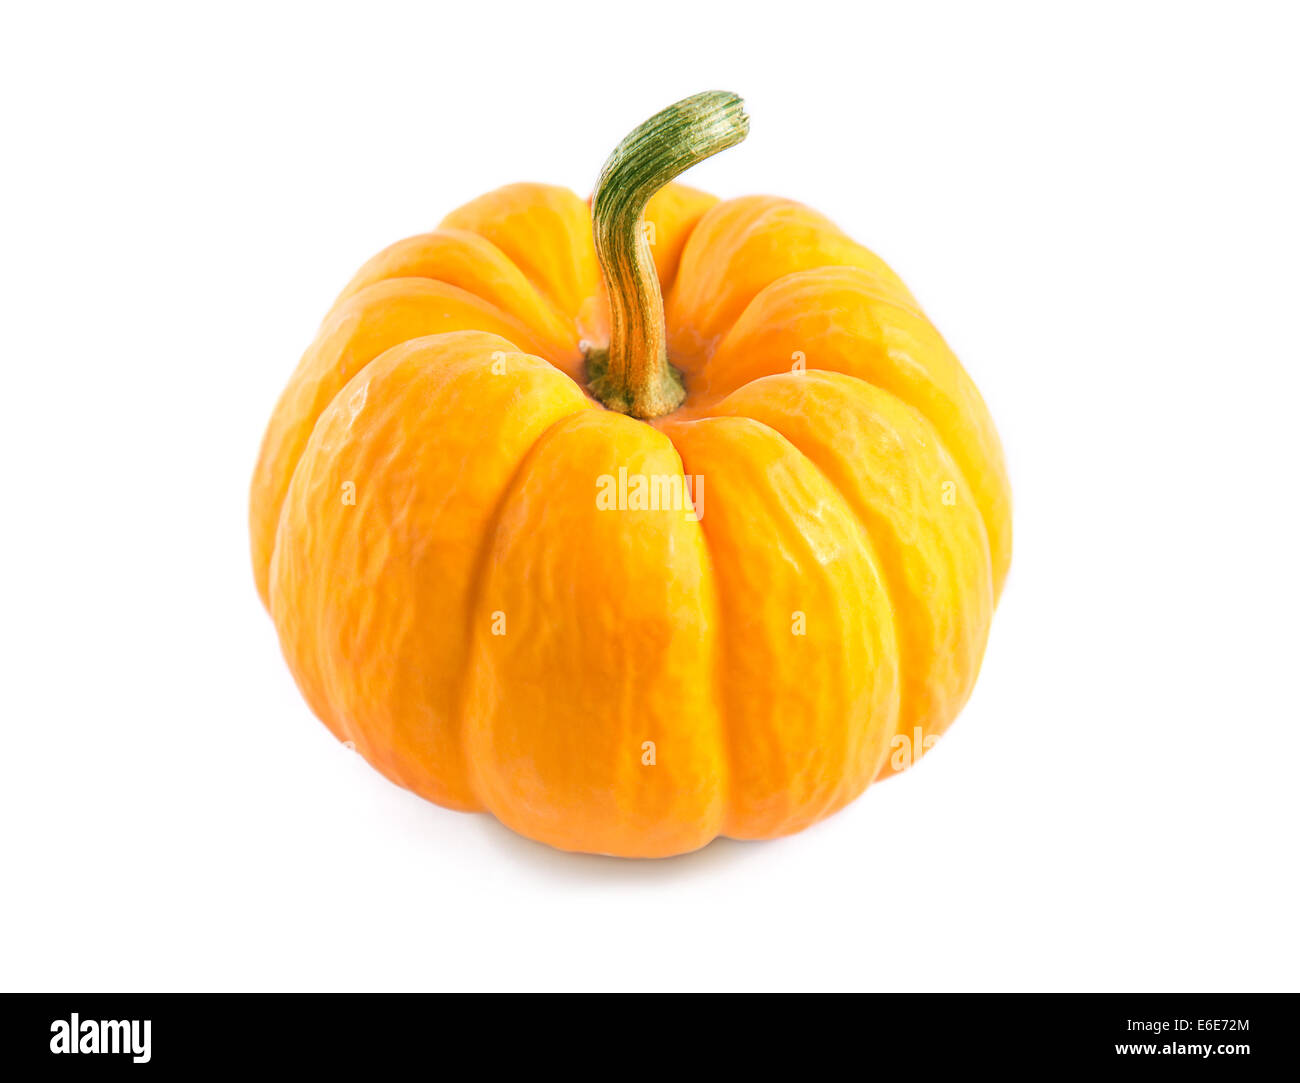 Fresh orange pumpkin, isolated on white background Stock Photo